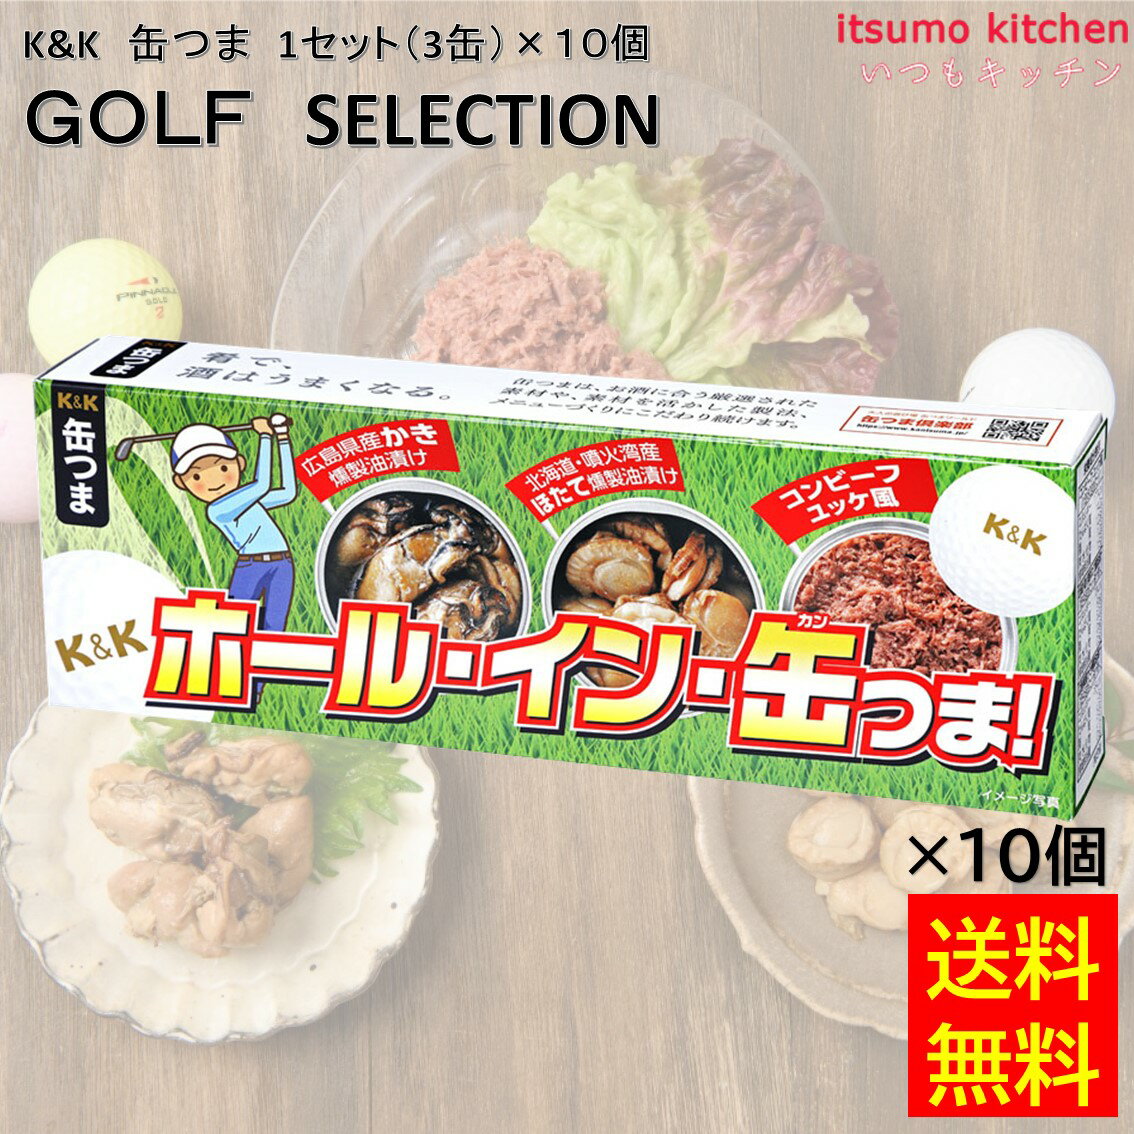 【送料無料】 K&K 缶つま GOLF SELECTION 1セット(3缶)×10個 国分グループ本社 ビール 缶詰 ゴルフ 1